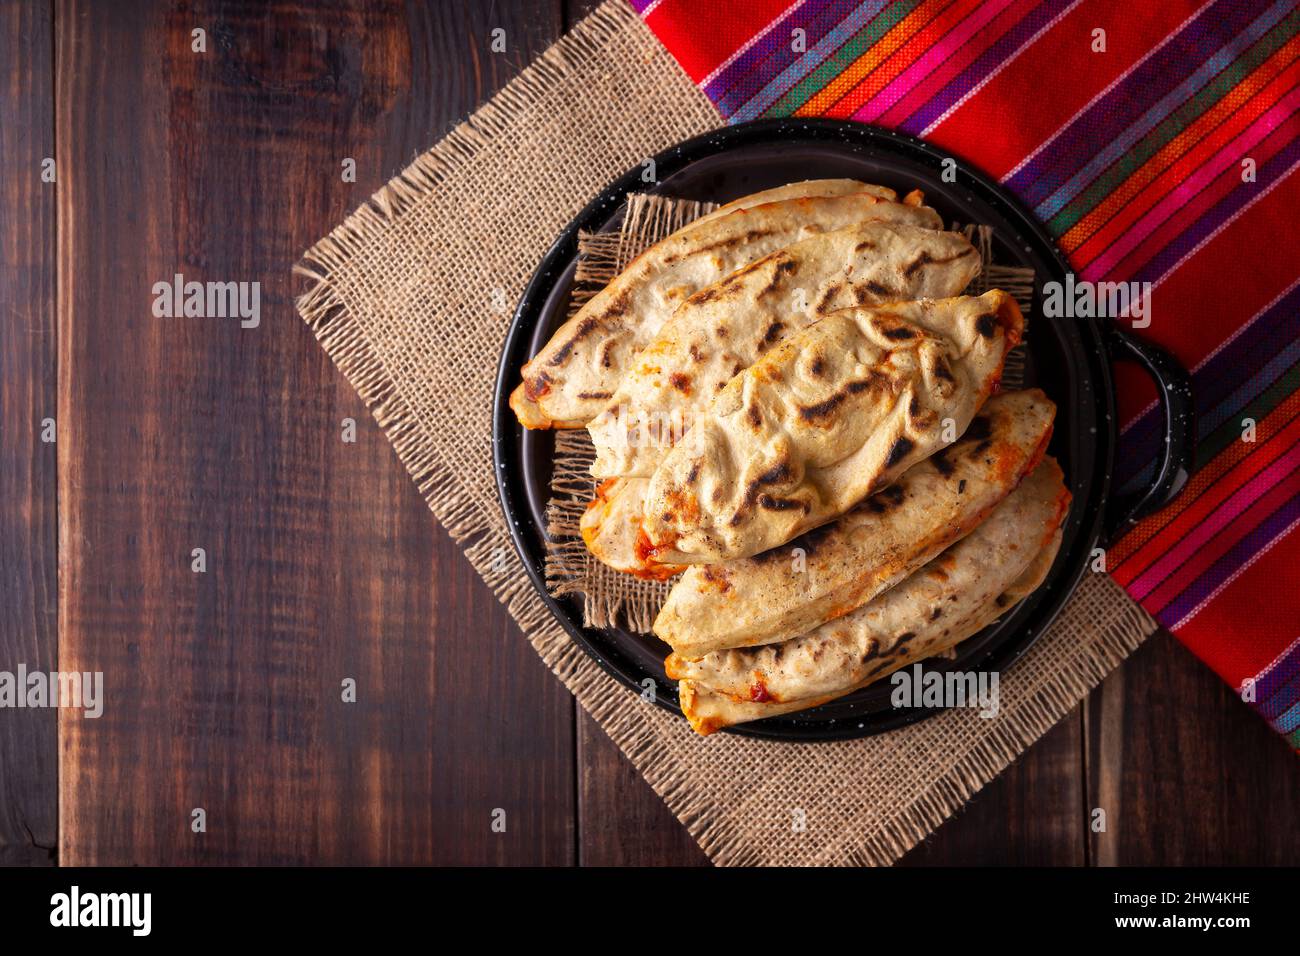 Tlacoyos. Piatto messicano pre-ispanico fatto di paty di farina di mais ripieno di chicharron prensado (rins di maiale pressato). Popolare Street food in Messico. Foto Stock